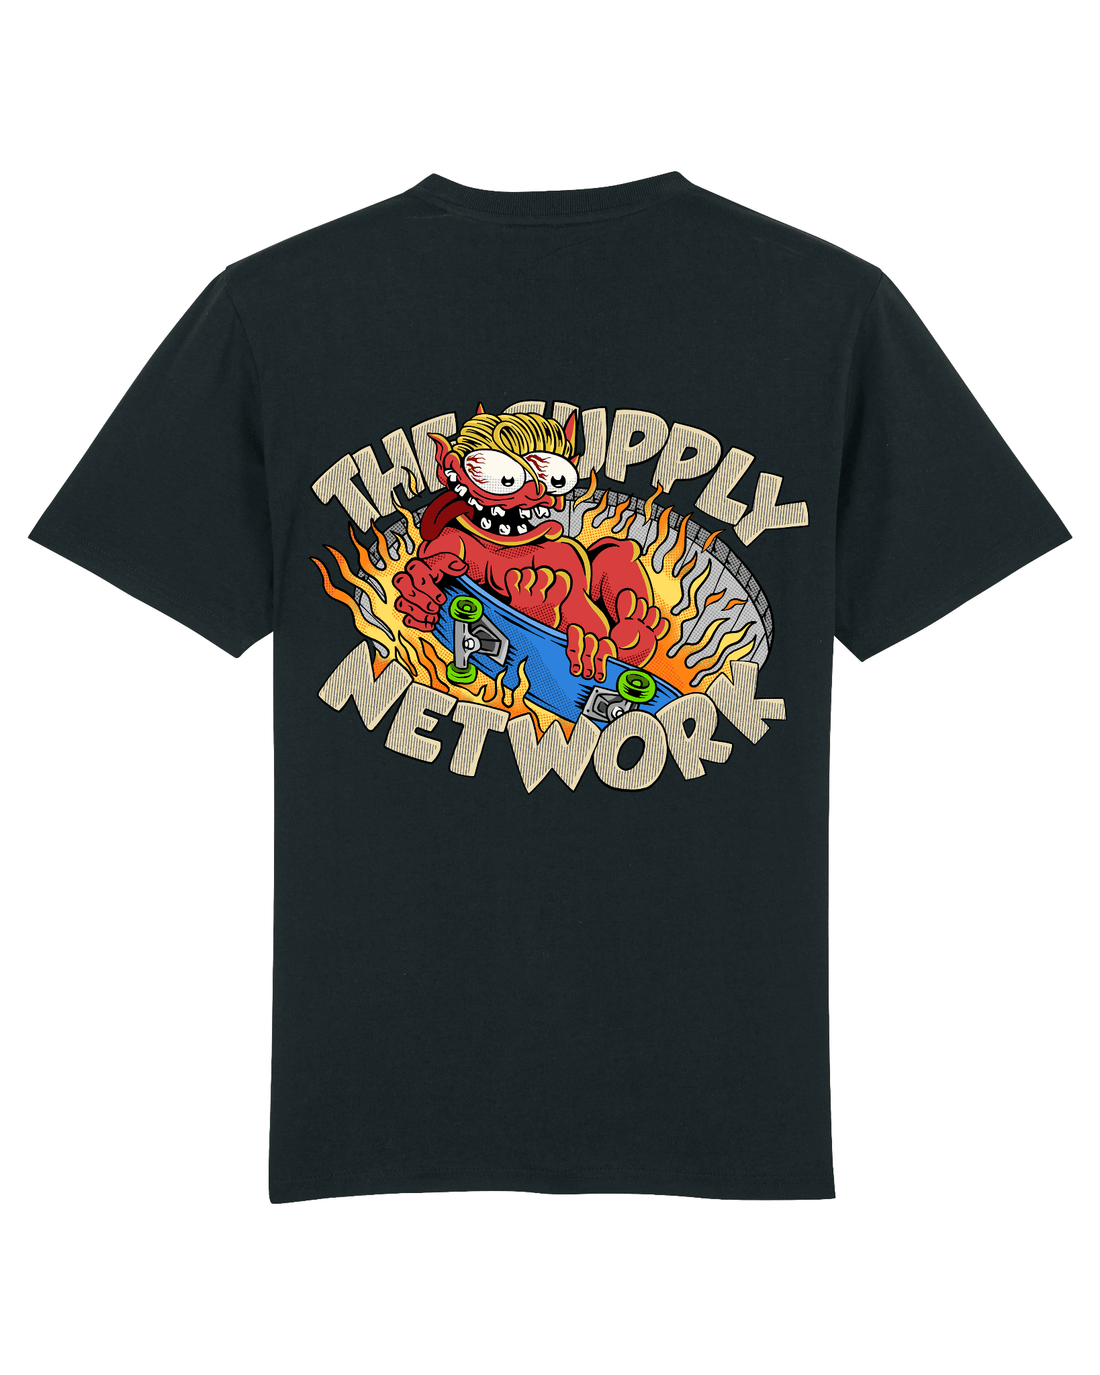 Black Skater T-Shirt, Devil Baby Back Print